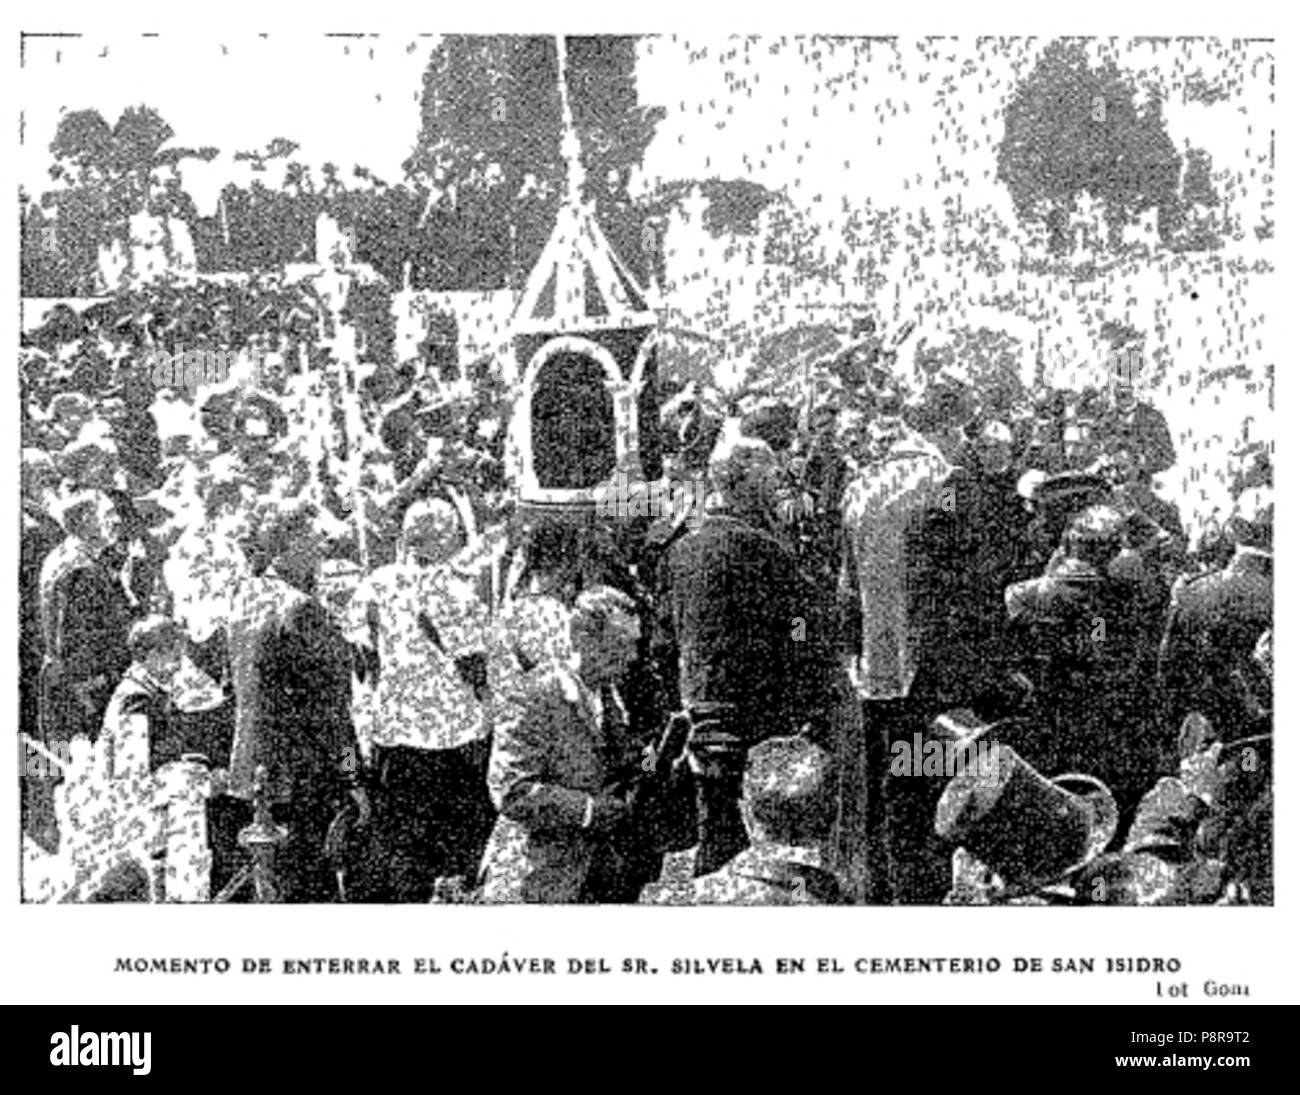 420 Momento de enterrar el cadáver del Sr. Silvela en el cementerio de San Isidro, foto de Goñi, ABC, 01-06-1905 Stock Photo